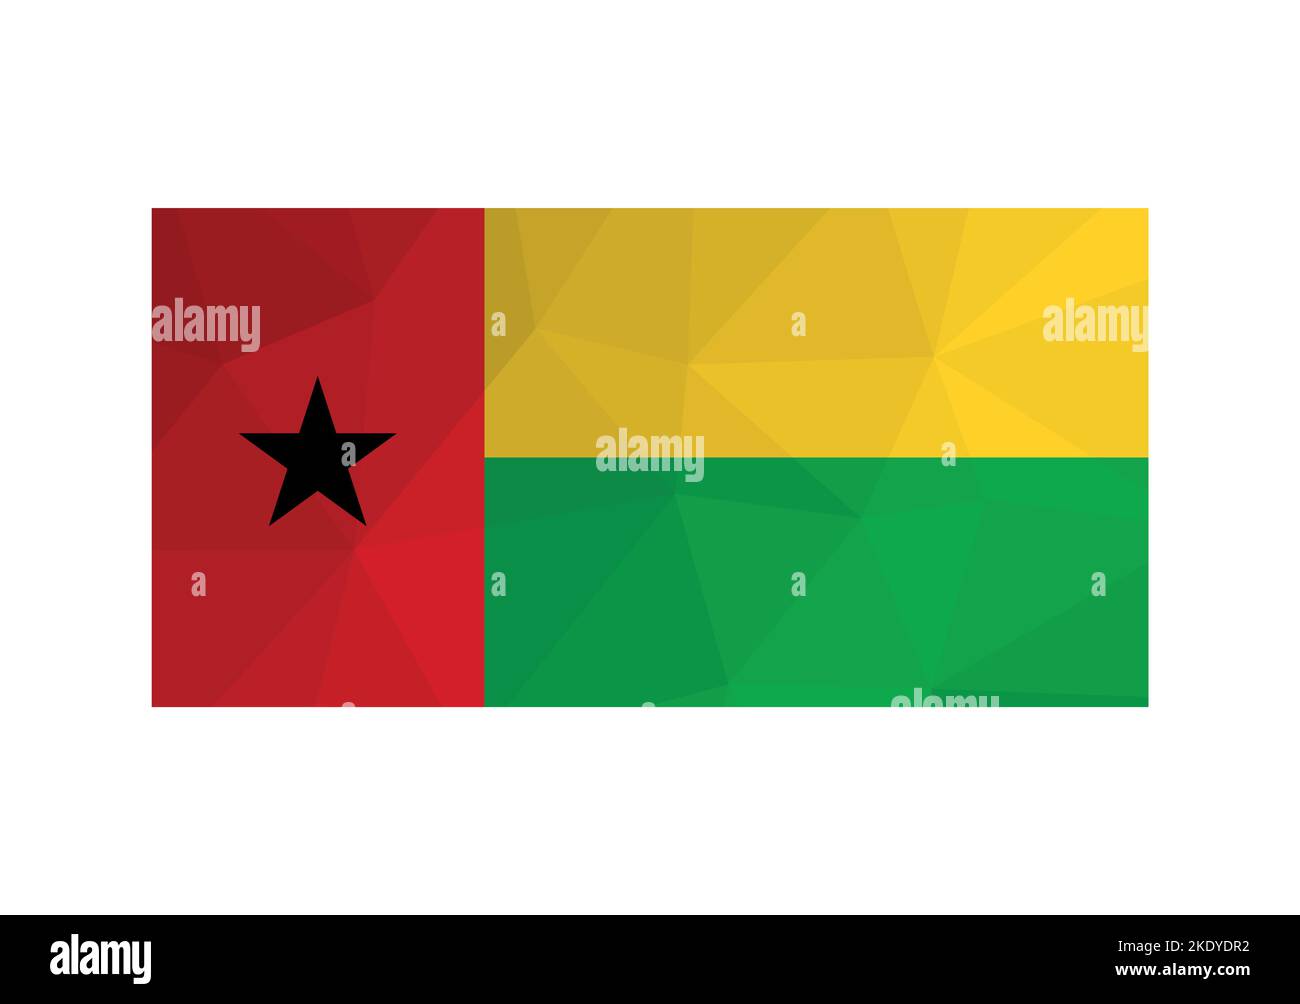 Illustration vectorielle. signature officielle de la Guinée-Bissau. Drapeau national avec rayures rouges, vertes, jaunes et étoile noire. Design créatif en polyester bas Illustration de Vecteur